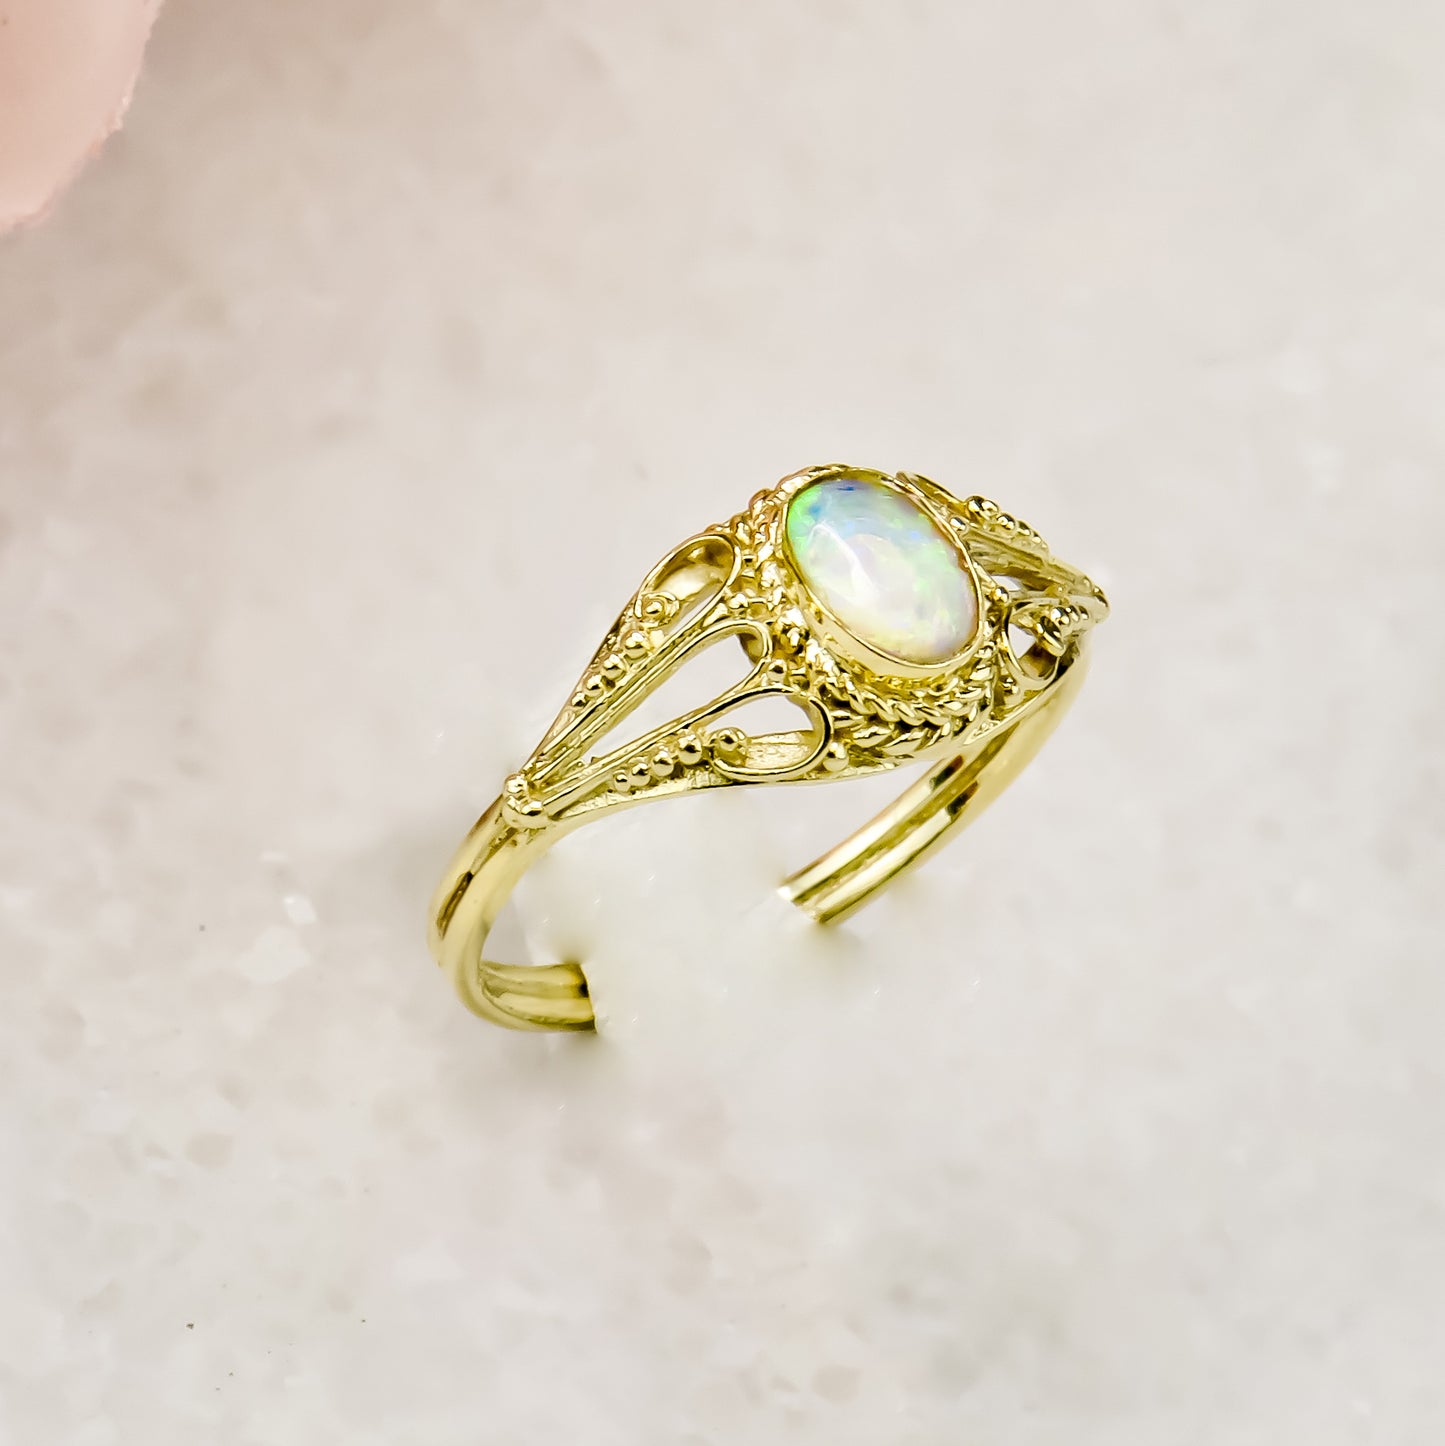 Opal ring made of 14 karat gold